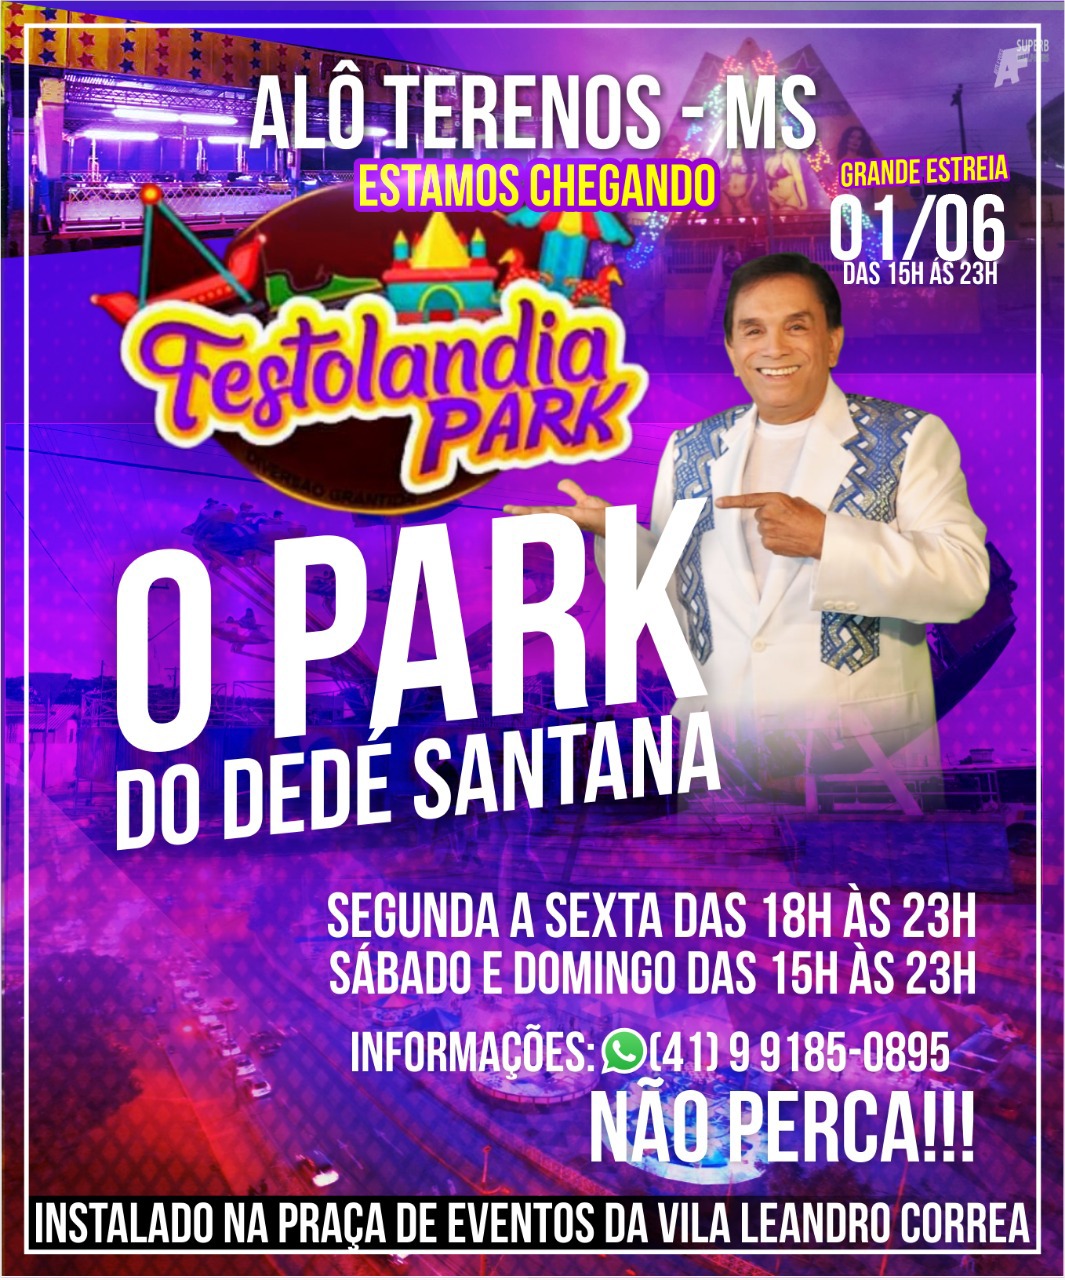 Festolandia Park: O Park do Dedé Santana